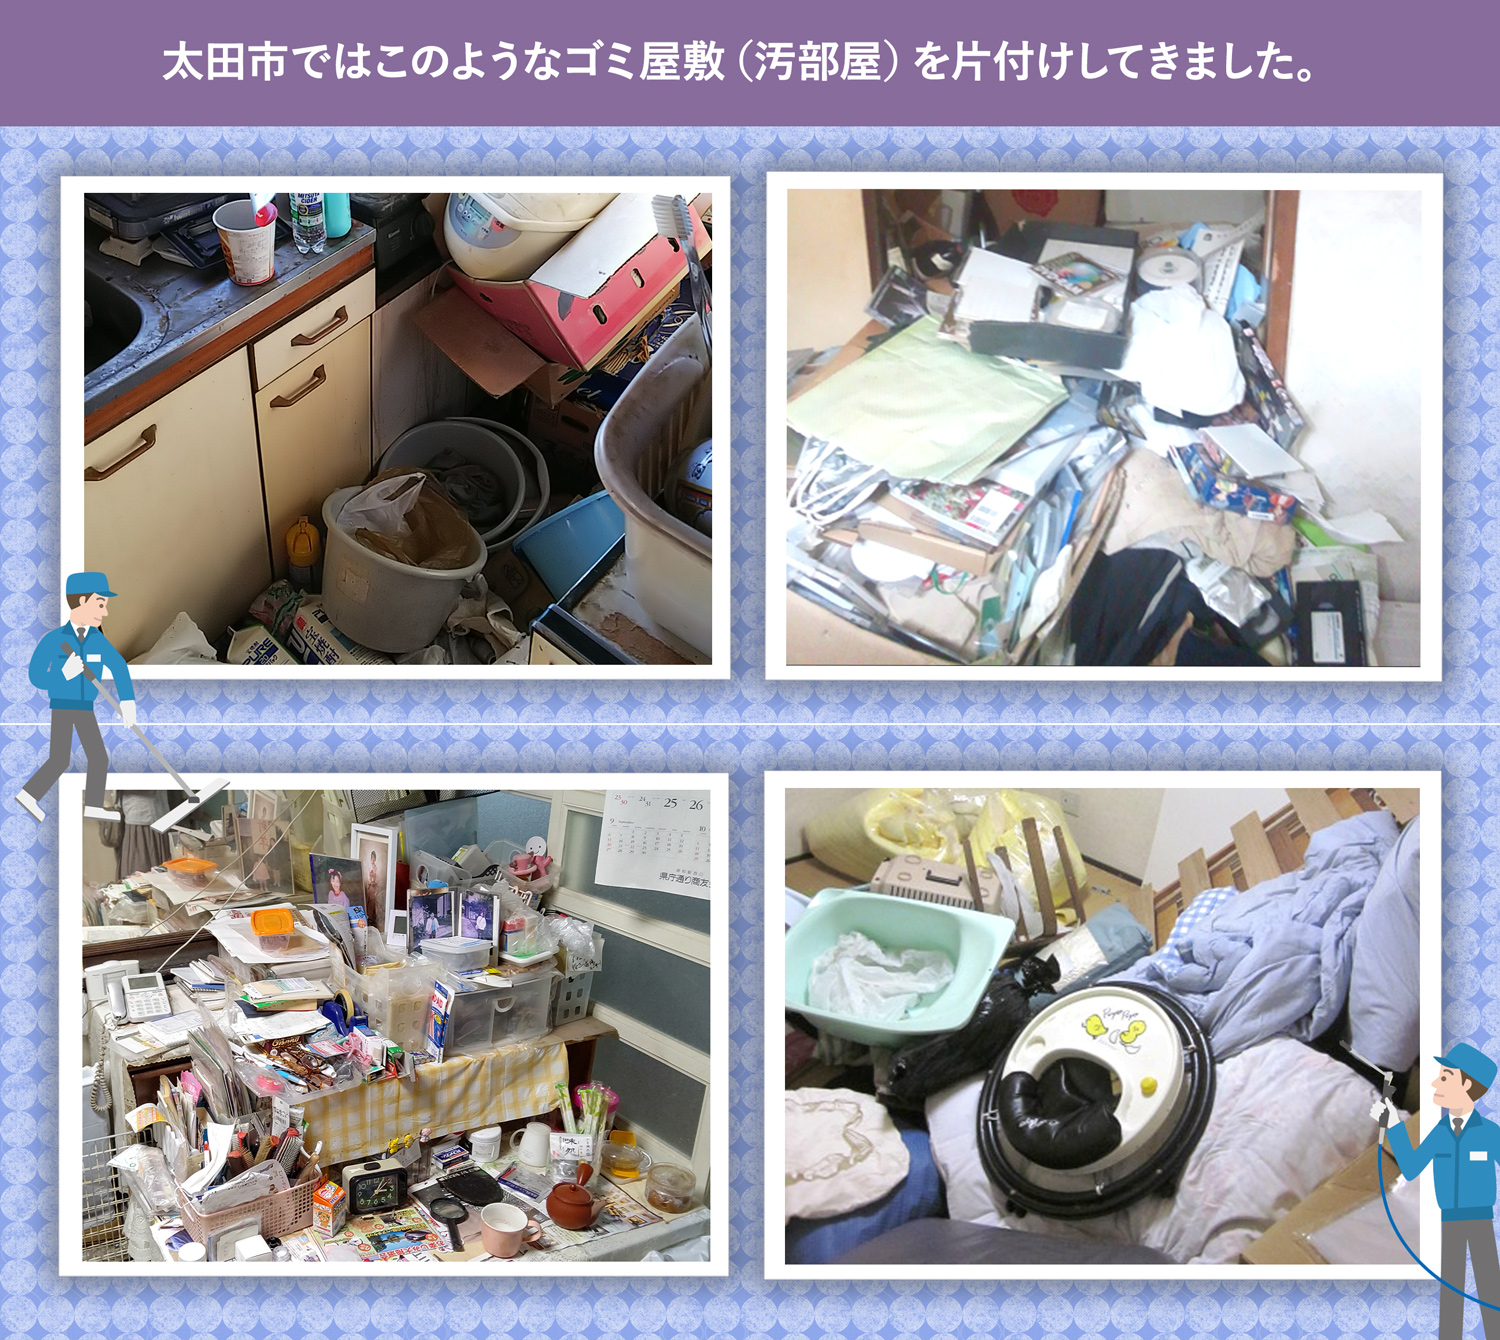 太田市で行ったで行ったごみ屋敷・汚部屋の片付けの一例